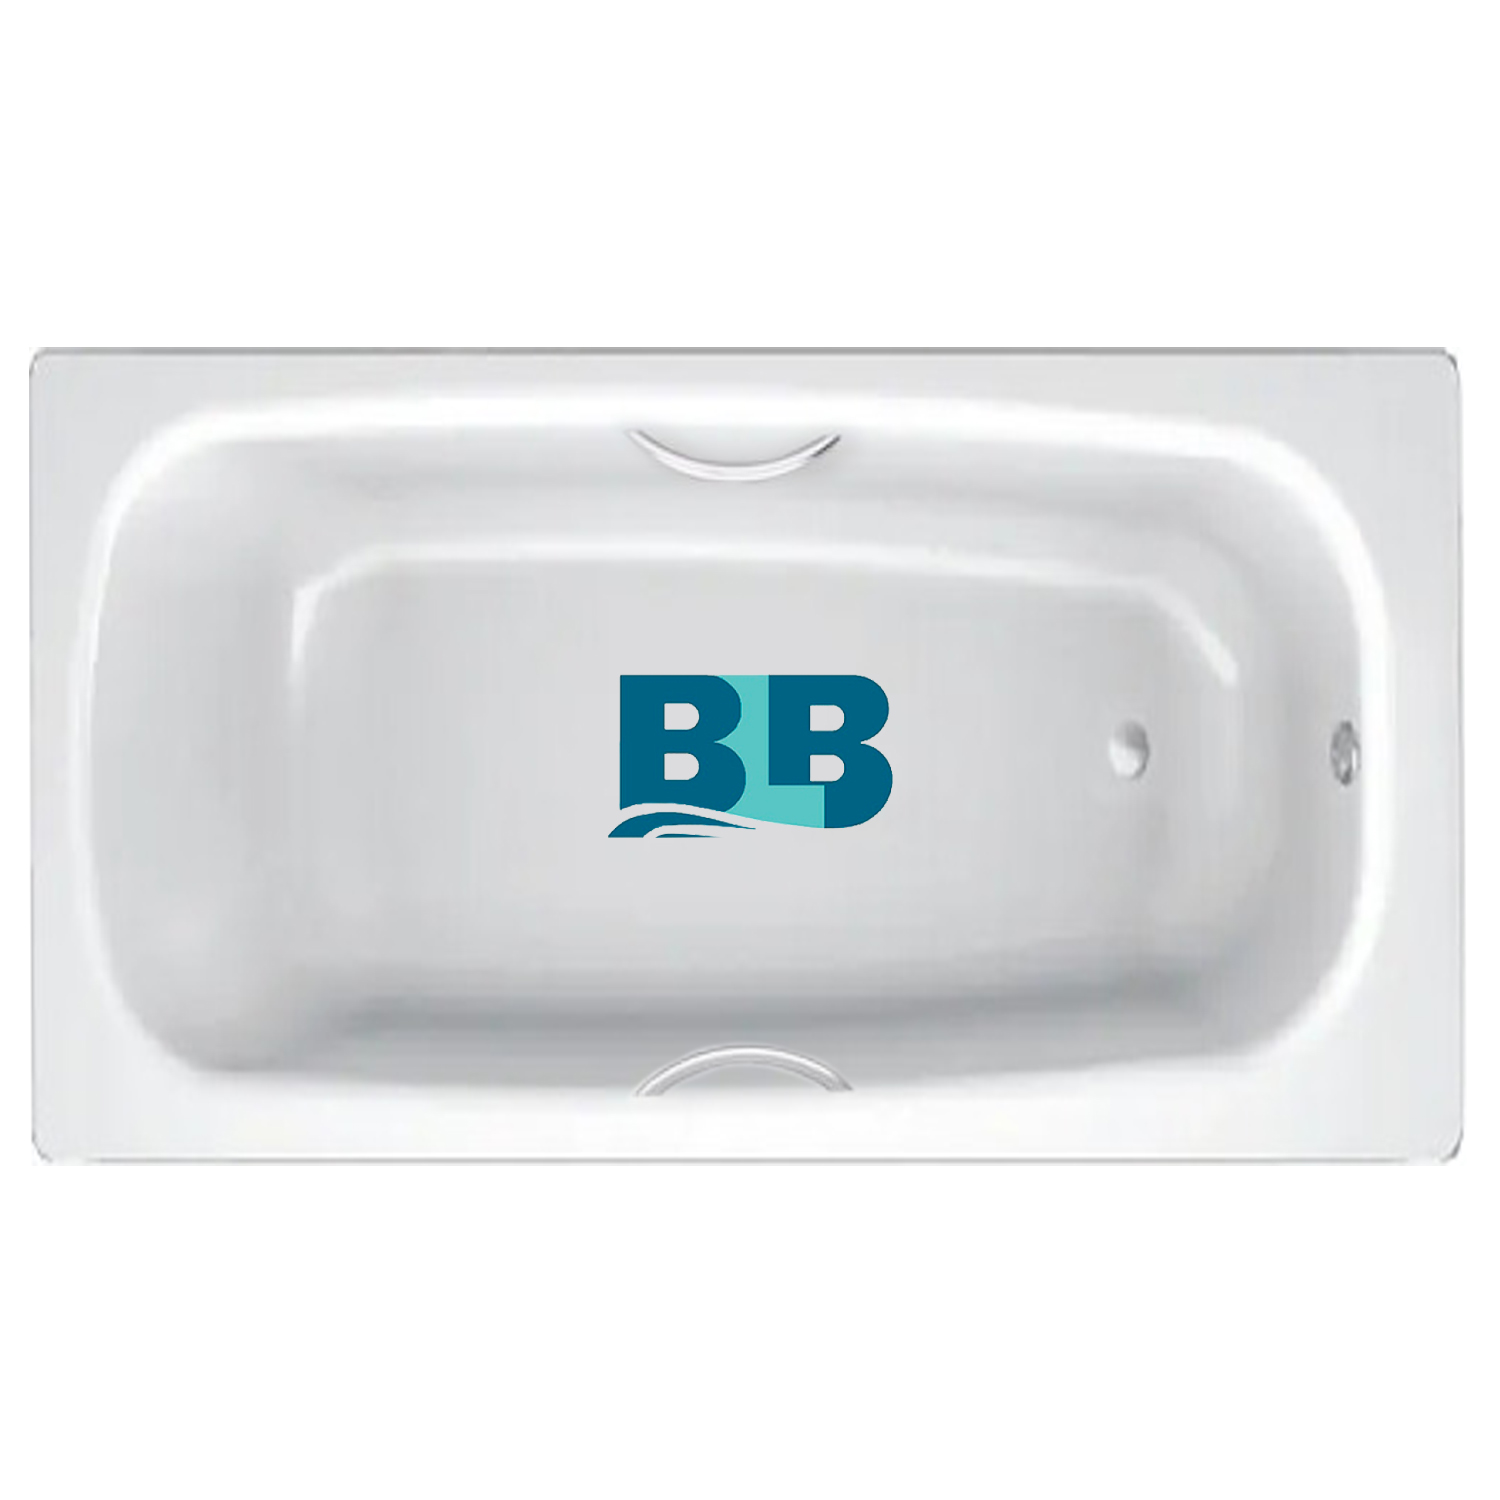 BLB apmstdbl1. Ванна стальная Universal HG BLB, С отверстиями для ручек. Код: 211310 стальная ванна BLB Universal b70h 170x70 см, с ножками apmstdbl1. Ванна стальная с ручками 150х75 и выступами.